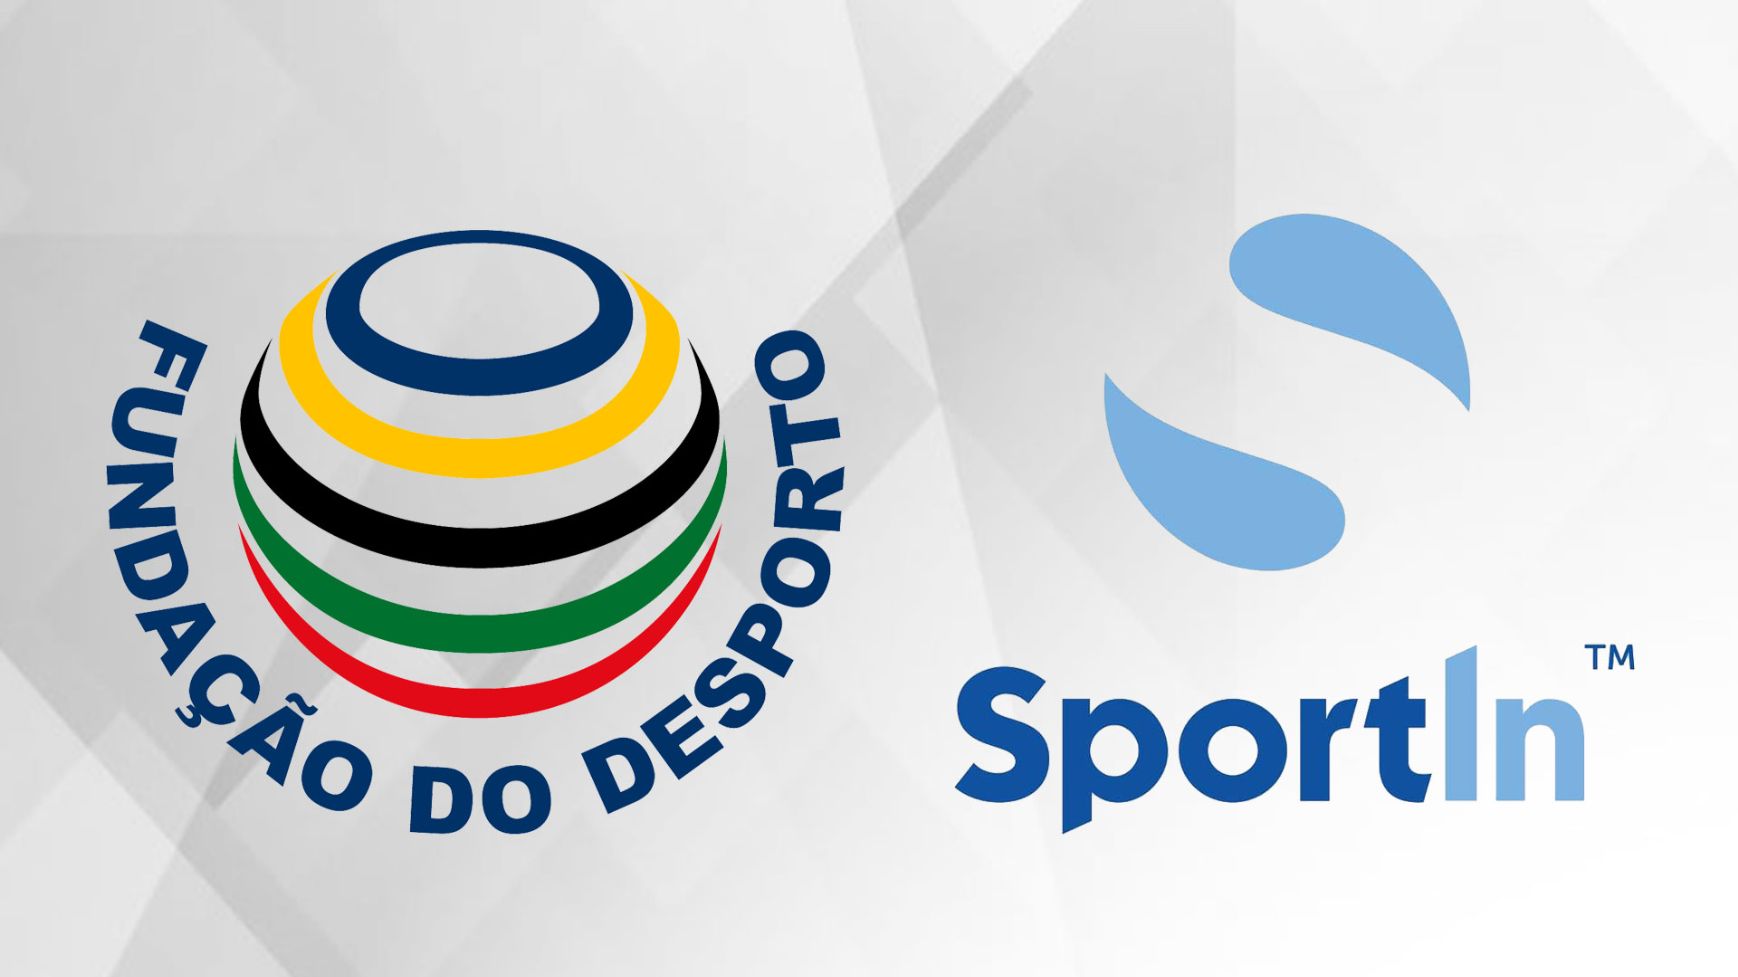 Fundação do Desporto celebra protocolo com a Sportin AS